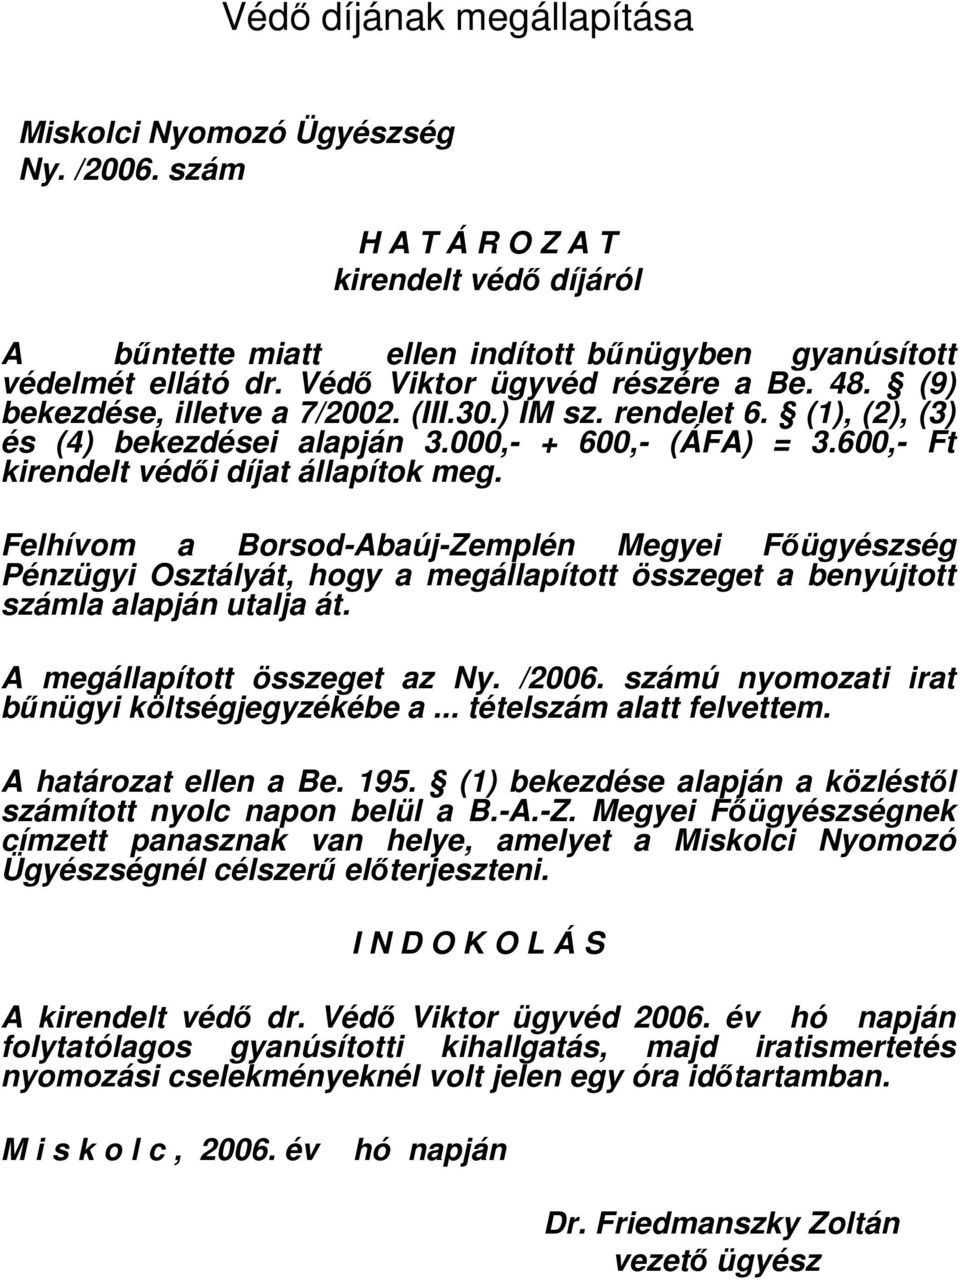 Felhívom a Borsod-Abaúj-Zemplén Megyei Fıügyészség Pénzügyi Osztályát, hogy a megállapított összeget a benyújtott számla alapján utalja át. A megállapított összeget az Ny. /2006.